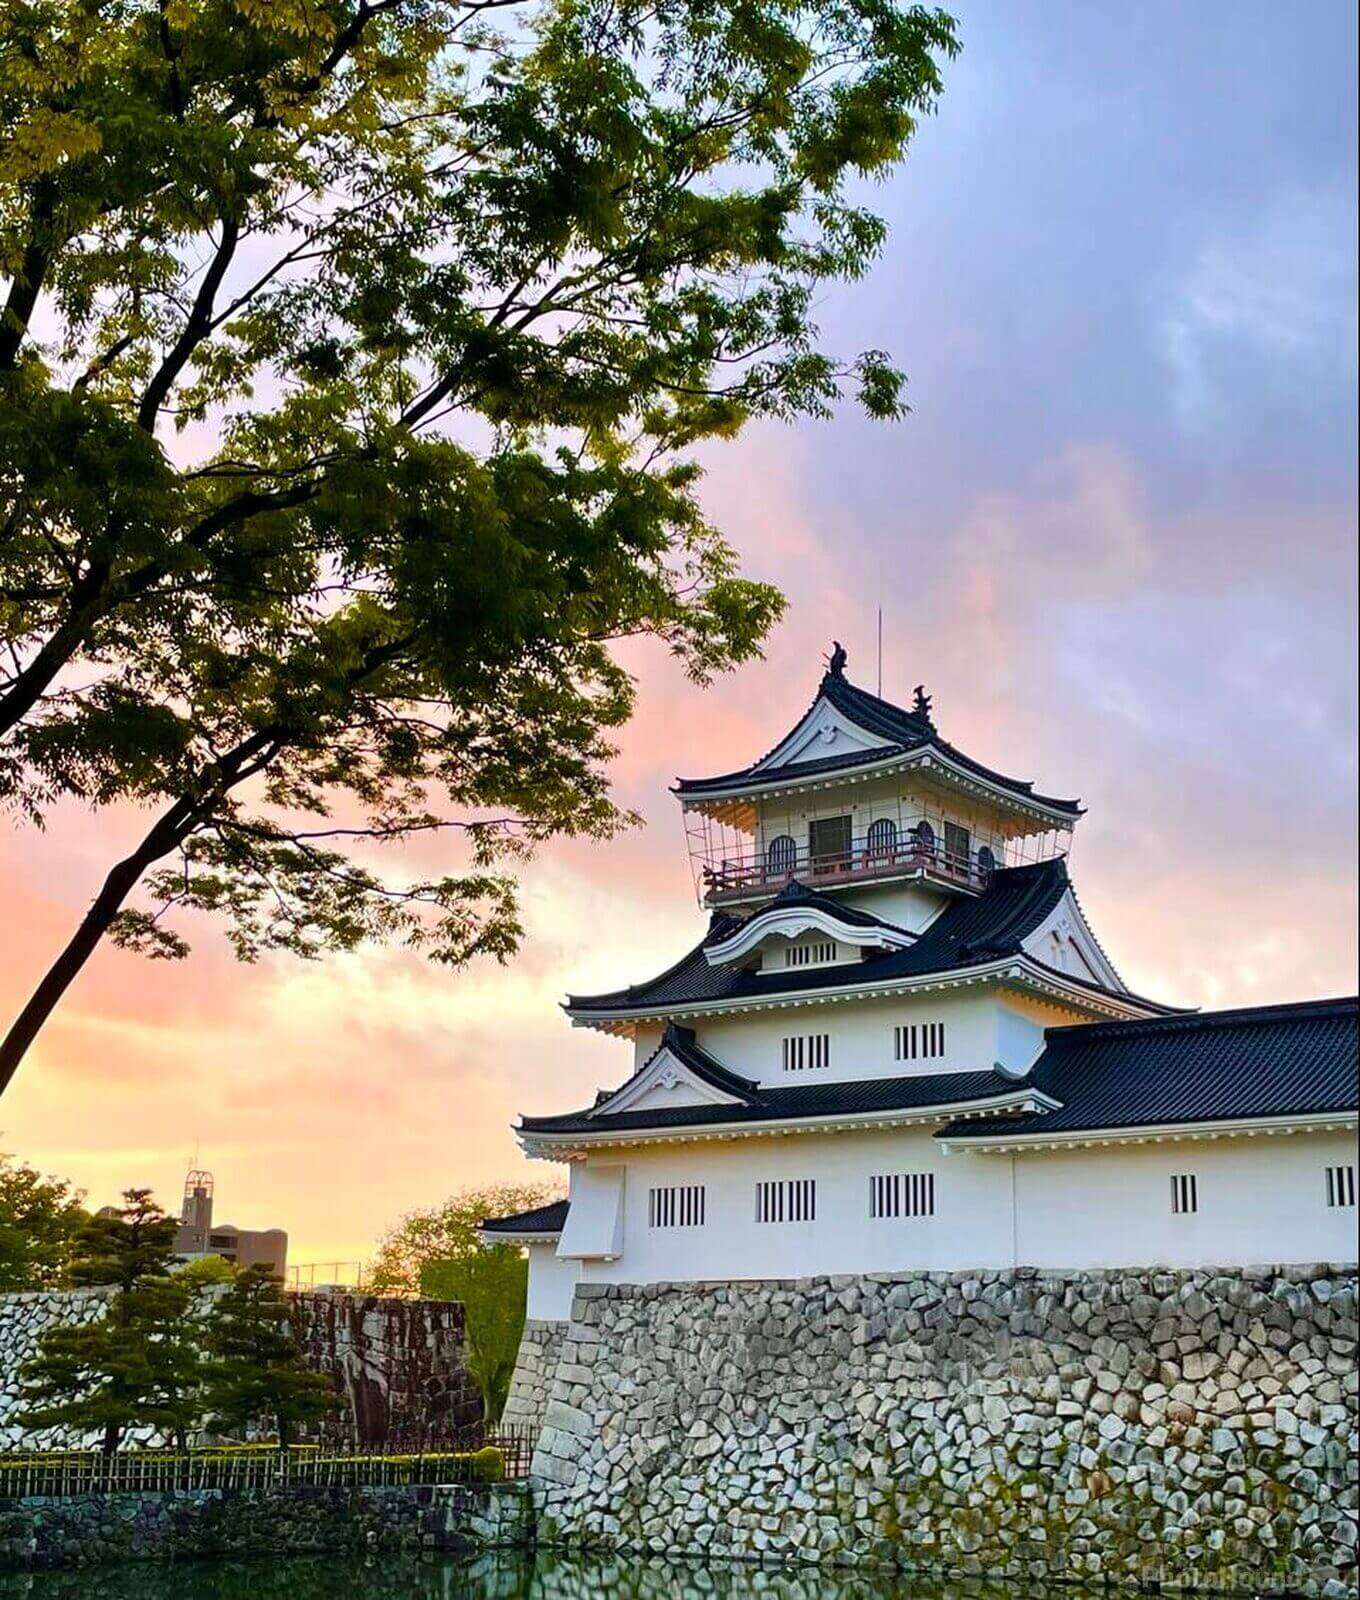 Image of Toyama Castle by Zoe Solnick